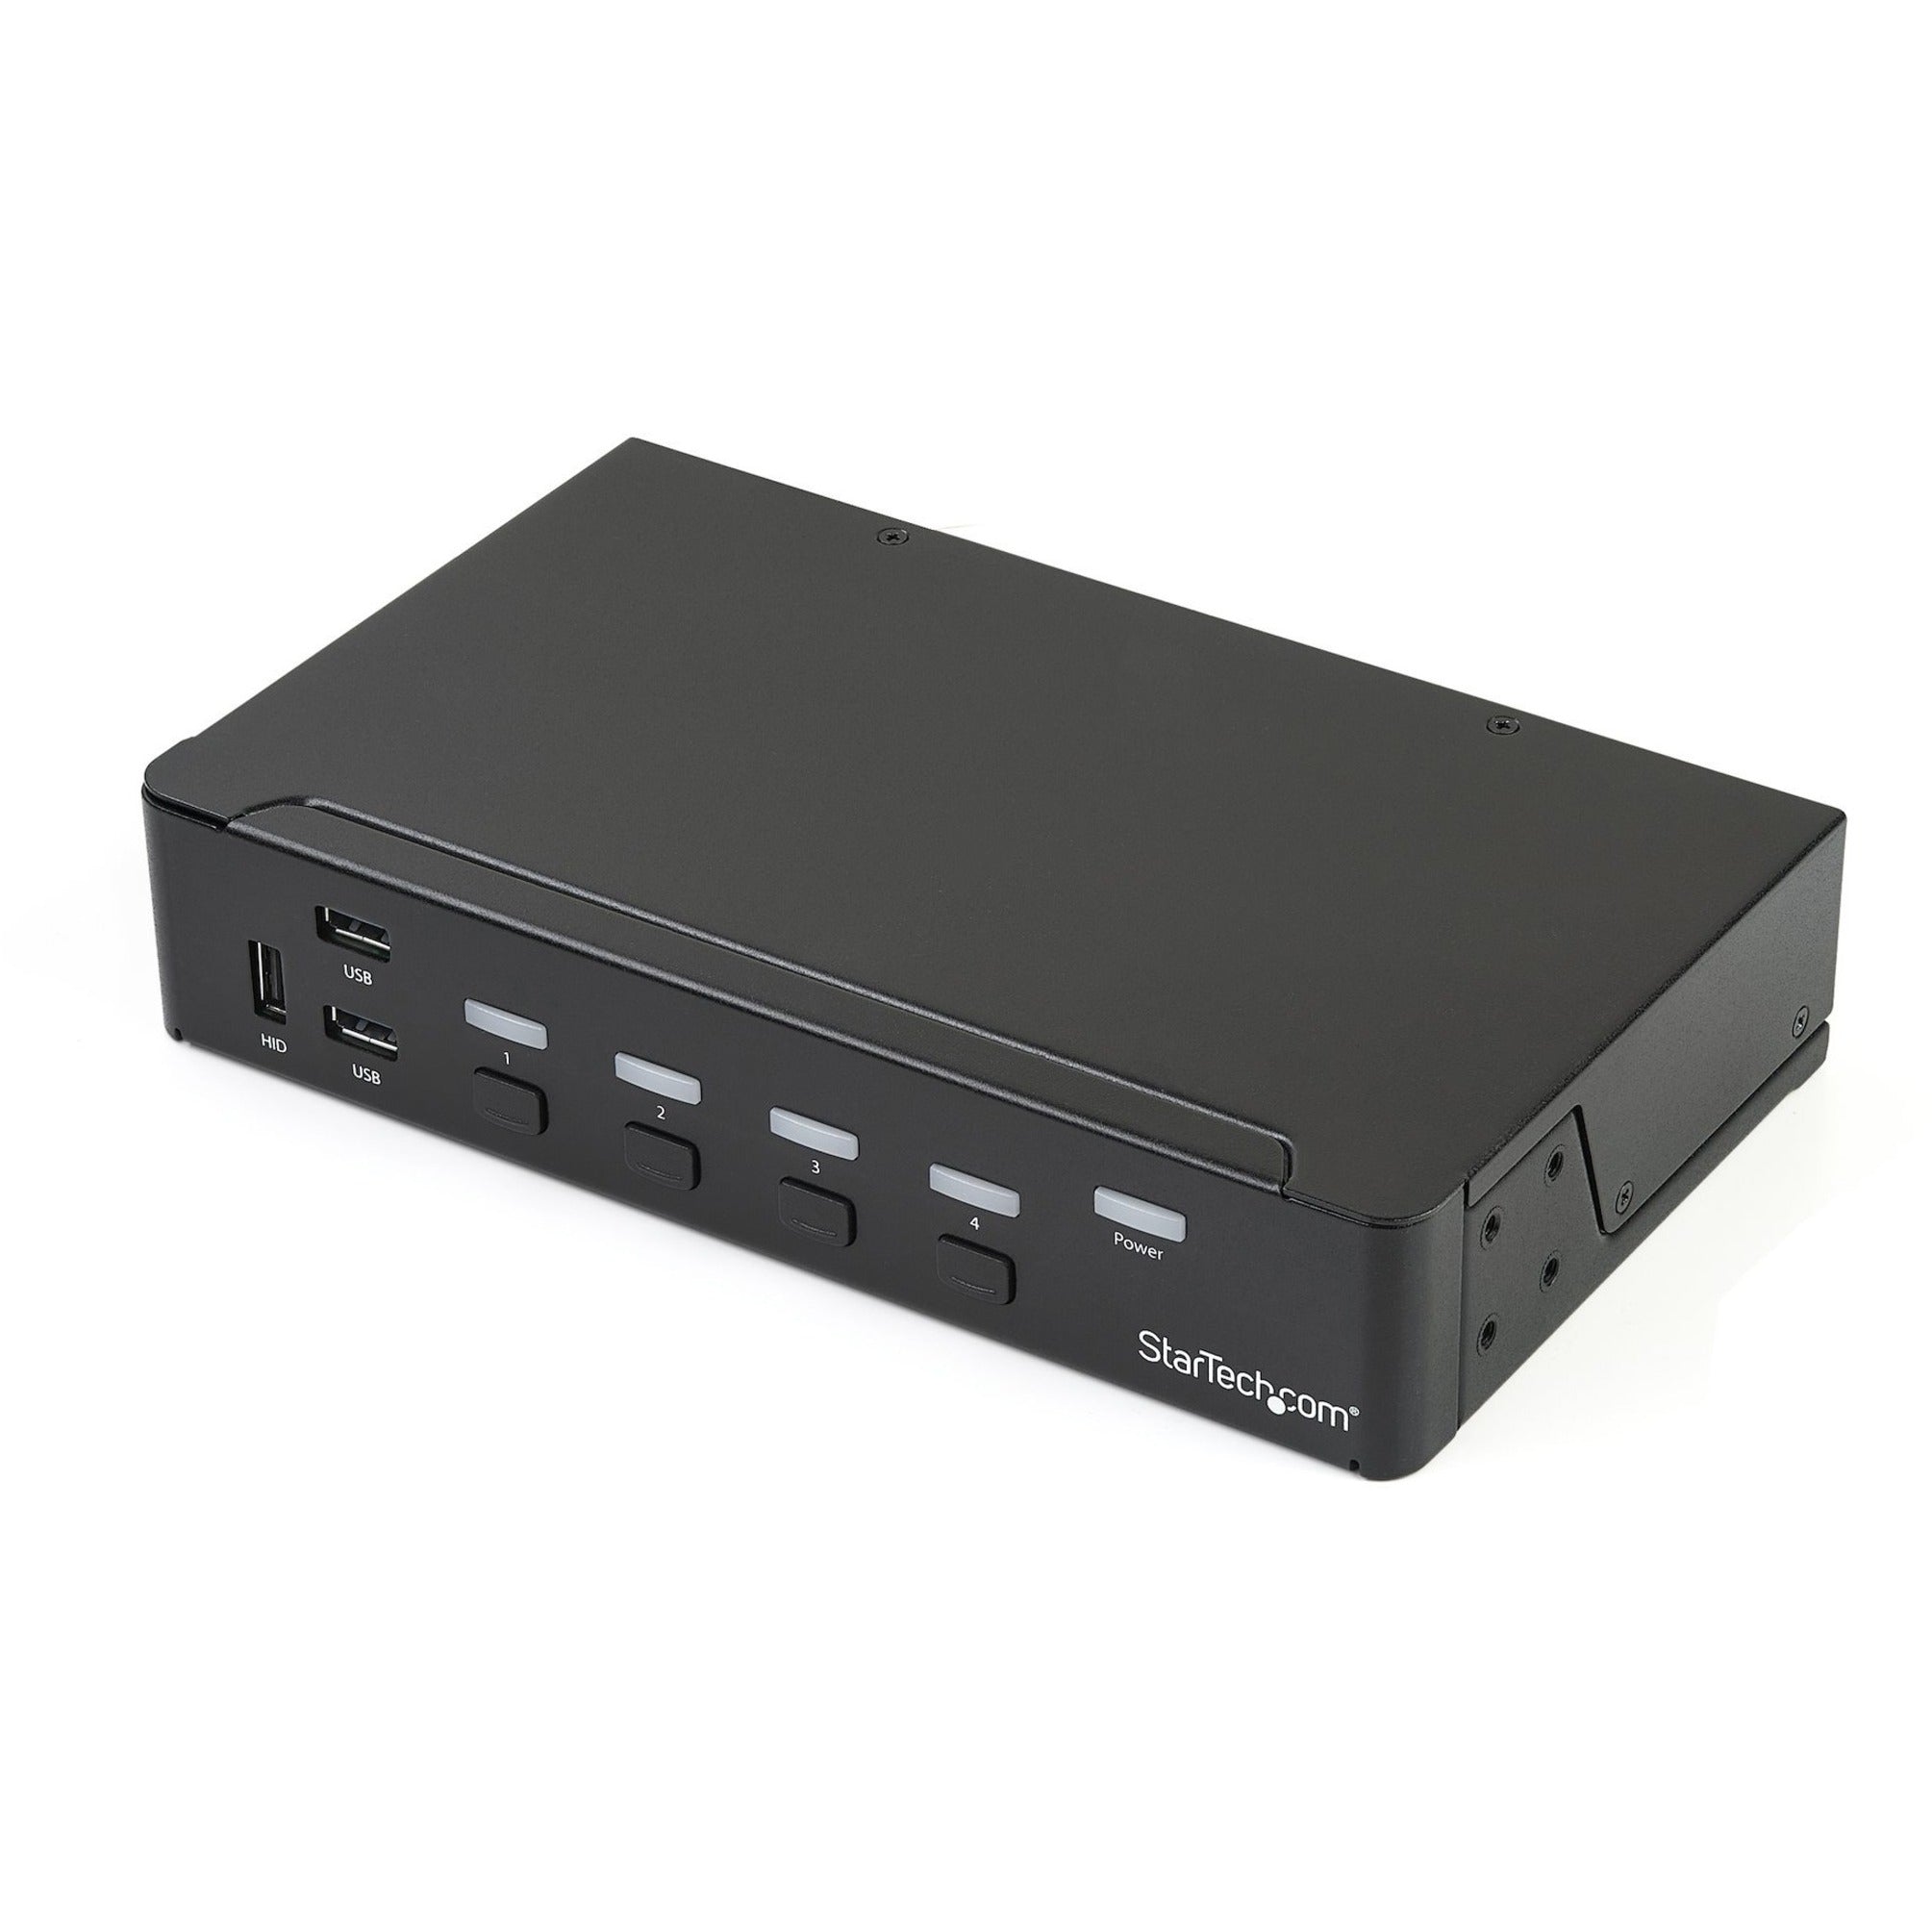 StarTech.com SV431DPU3A2 4-Port DisplayPort KVM Switch - USB 3.0 - 4K, Built-in USB 3.0 Hub for Peripherals